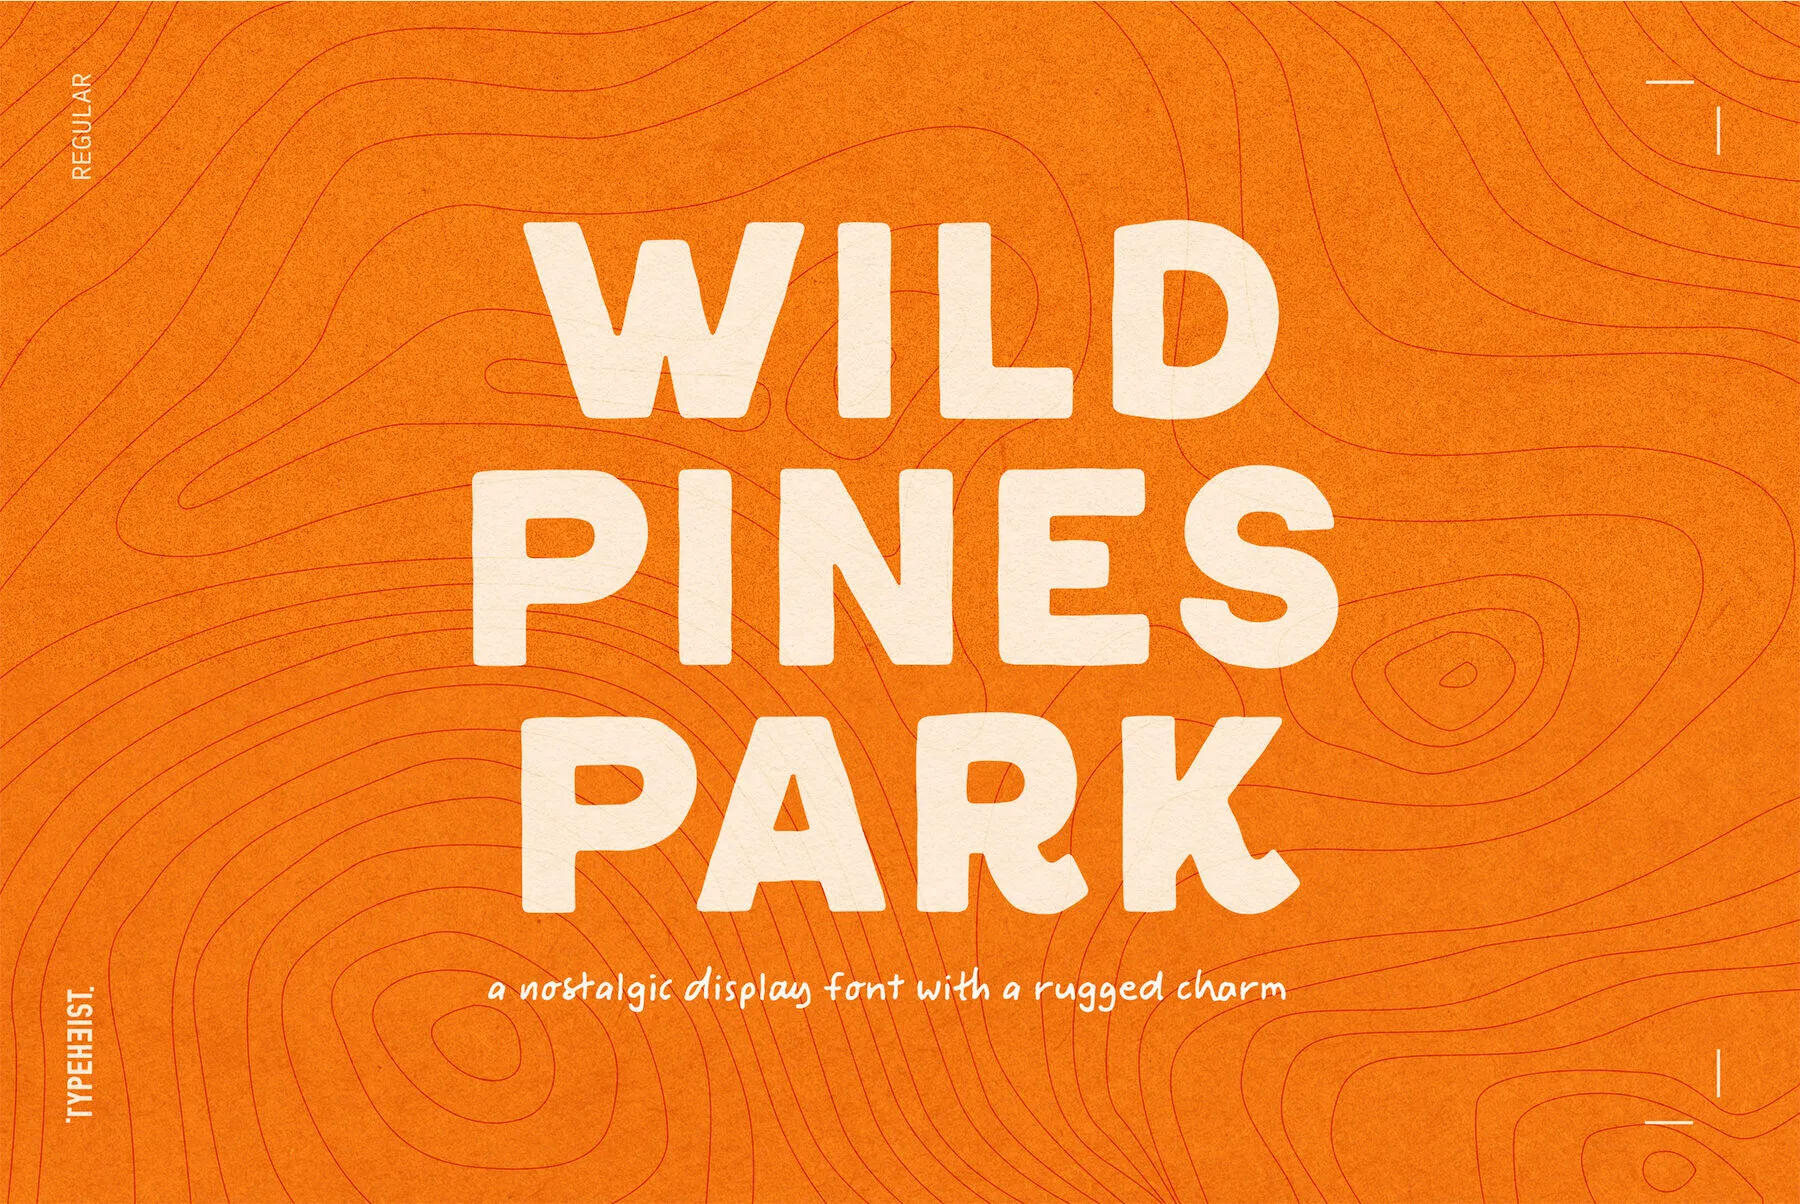 Wild Pines Park